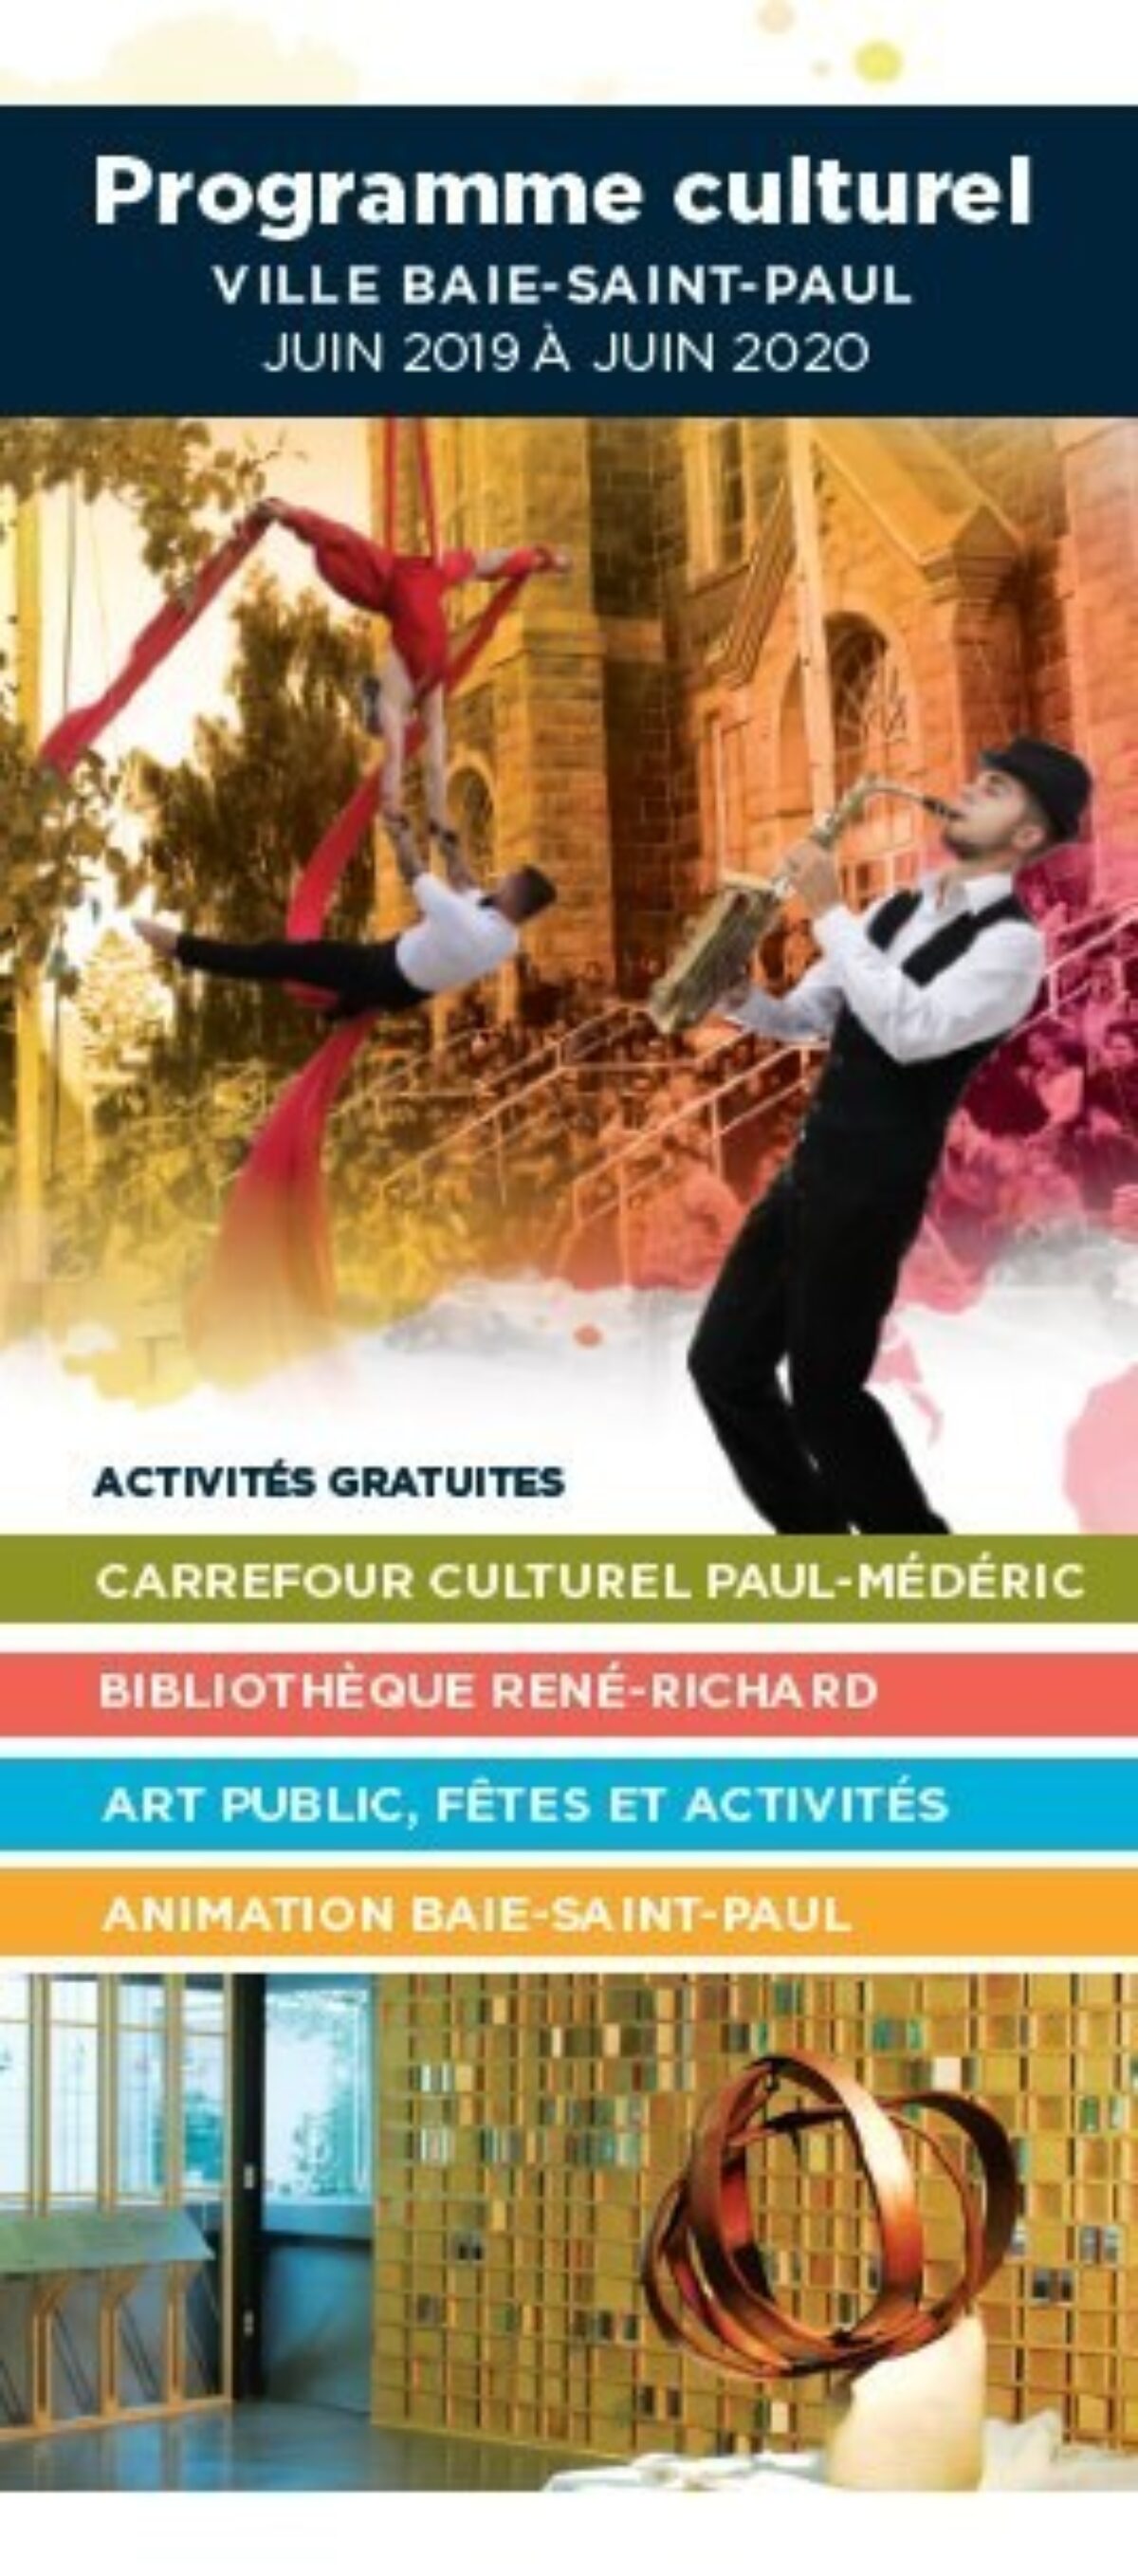 Le programme culturel 2019-2020 de la Ville de Baie-Saint-Paul est sorti!